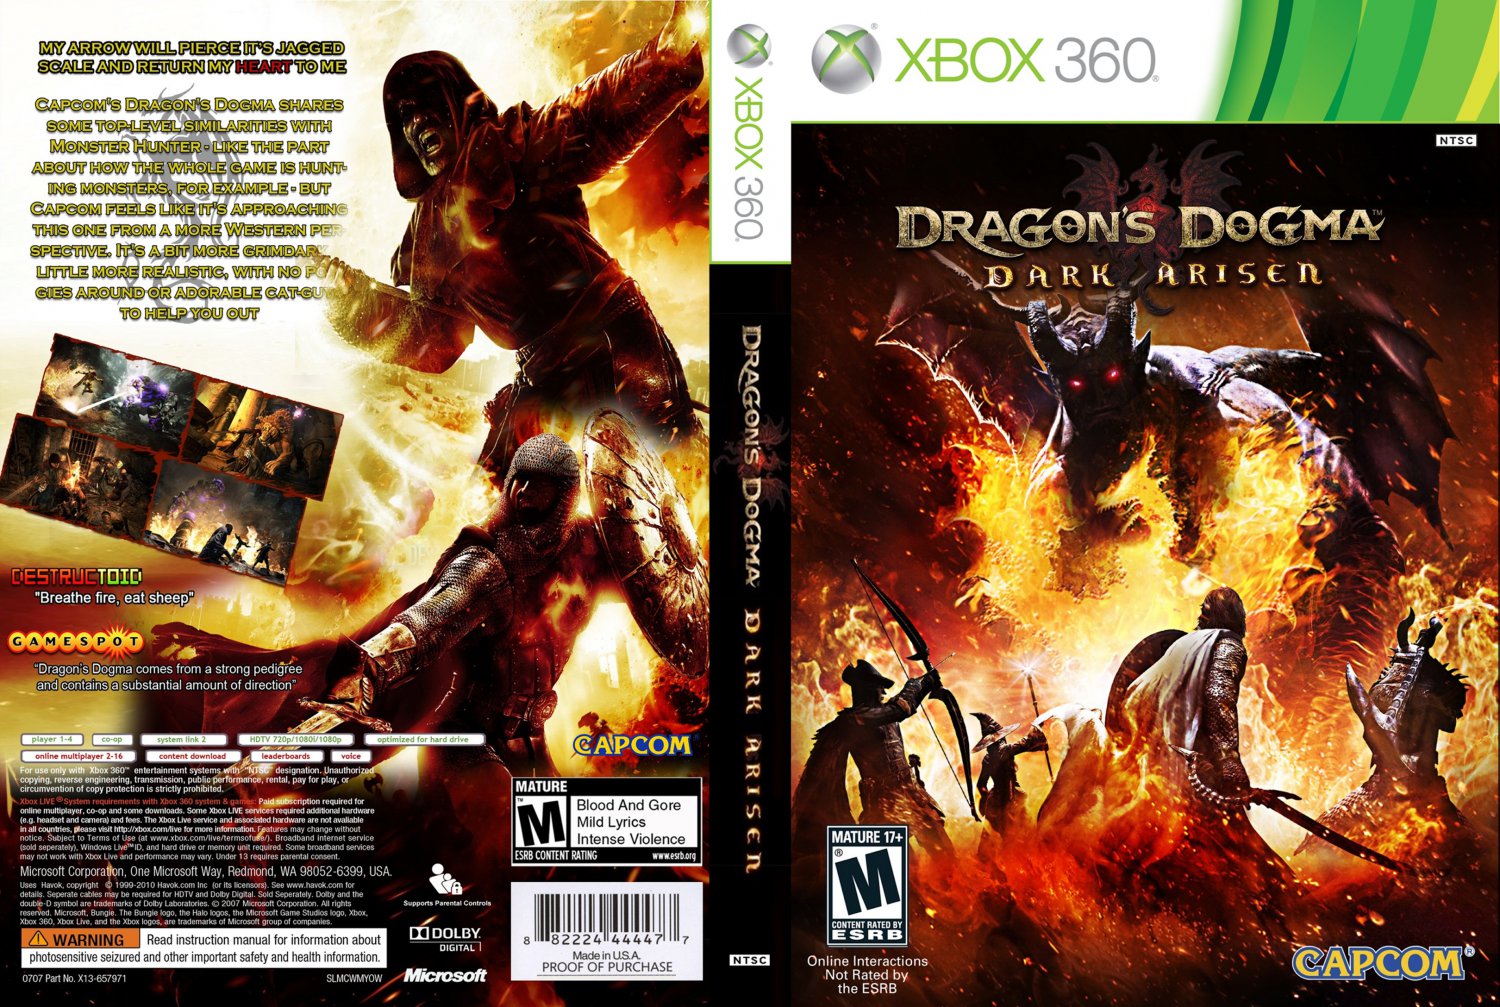 Dragons dogma 2 купить ps5 диск. Dragon’s Dogma: Dark Arisen Xbox 360. Dragon's Dogma Dark Arisen обложка xbox360. Dragon's Dogma Dark Arisen Xbox 360 Disc. Dragons Dogma ps3 диск.